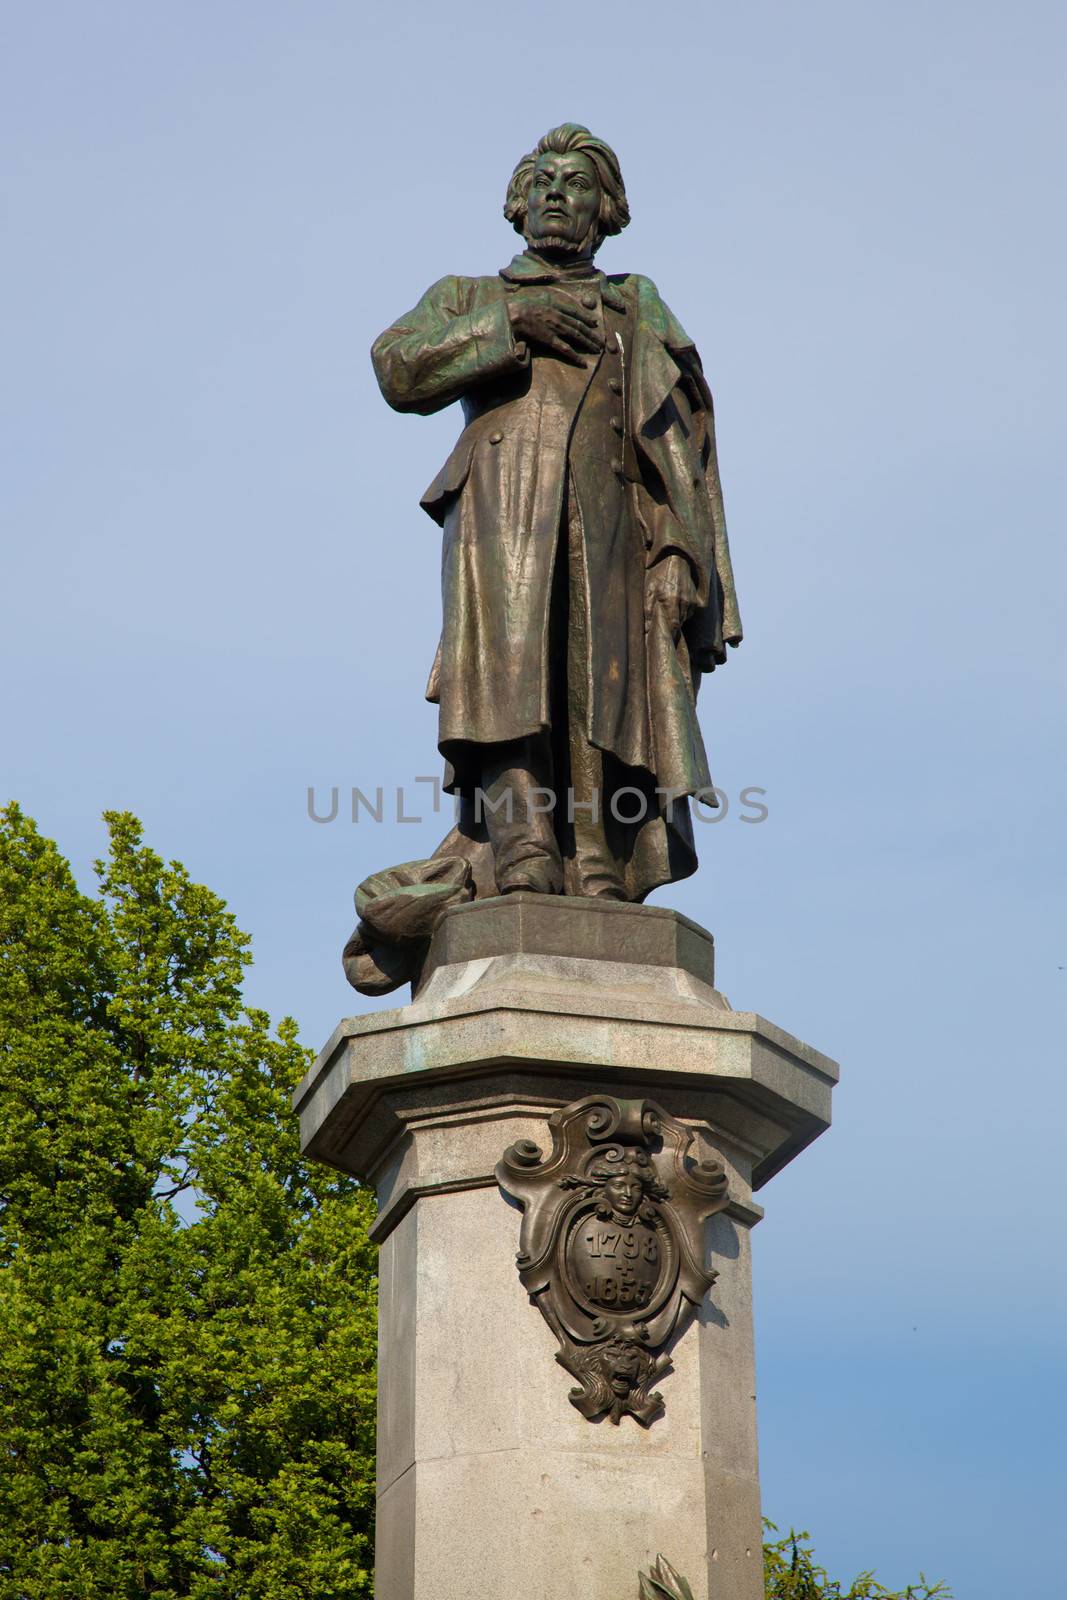 Adam Mickiewicz Monument in Warsaw, Poland at the Krakowskie Przedmiescie